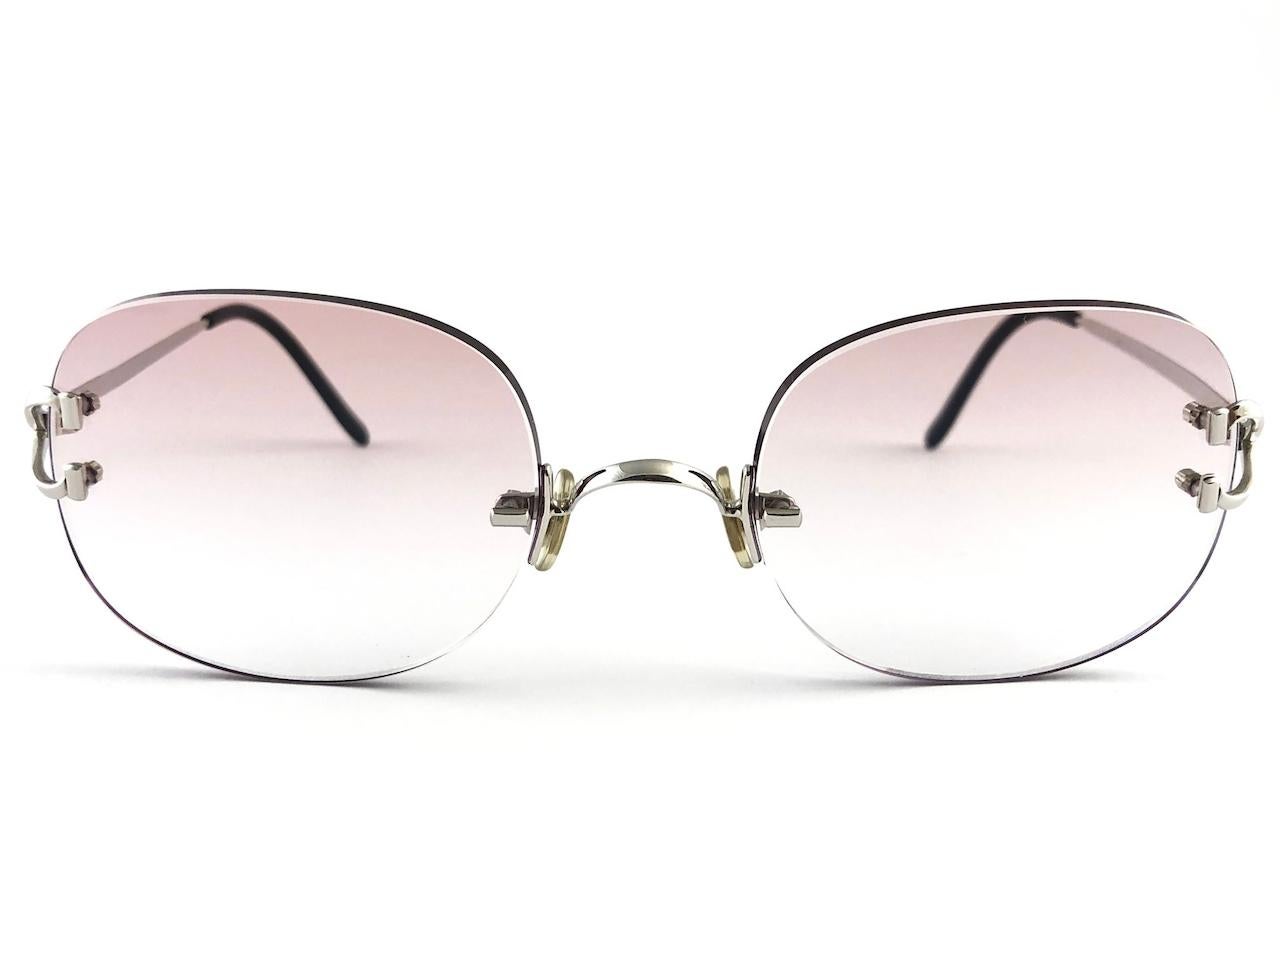 New Cartier Serrano einzigartige randlose Sonnenbrille aus Platin mit ultra hellbraunen Verlaufsgläsern (UV-Schutz).  Rahmen mit Front und Seiten in der Sonderedition Gold. Alle Markenzeichen. Cartier-Goldzeichen auf den Ohrmuscheln.  Sie sind wie